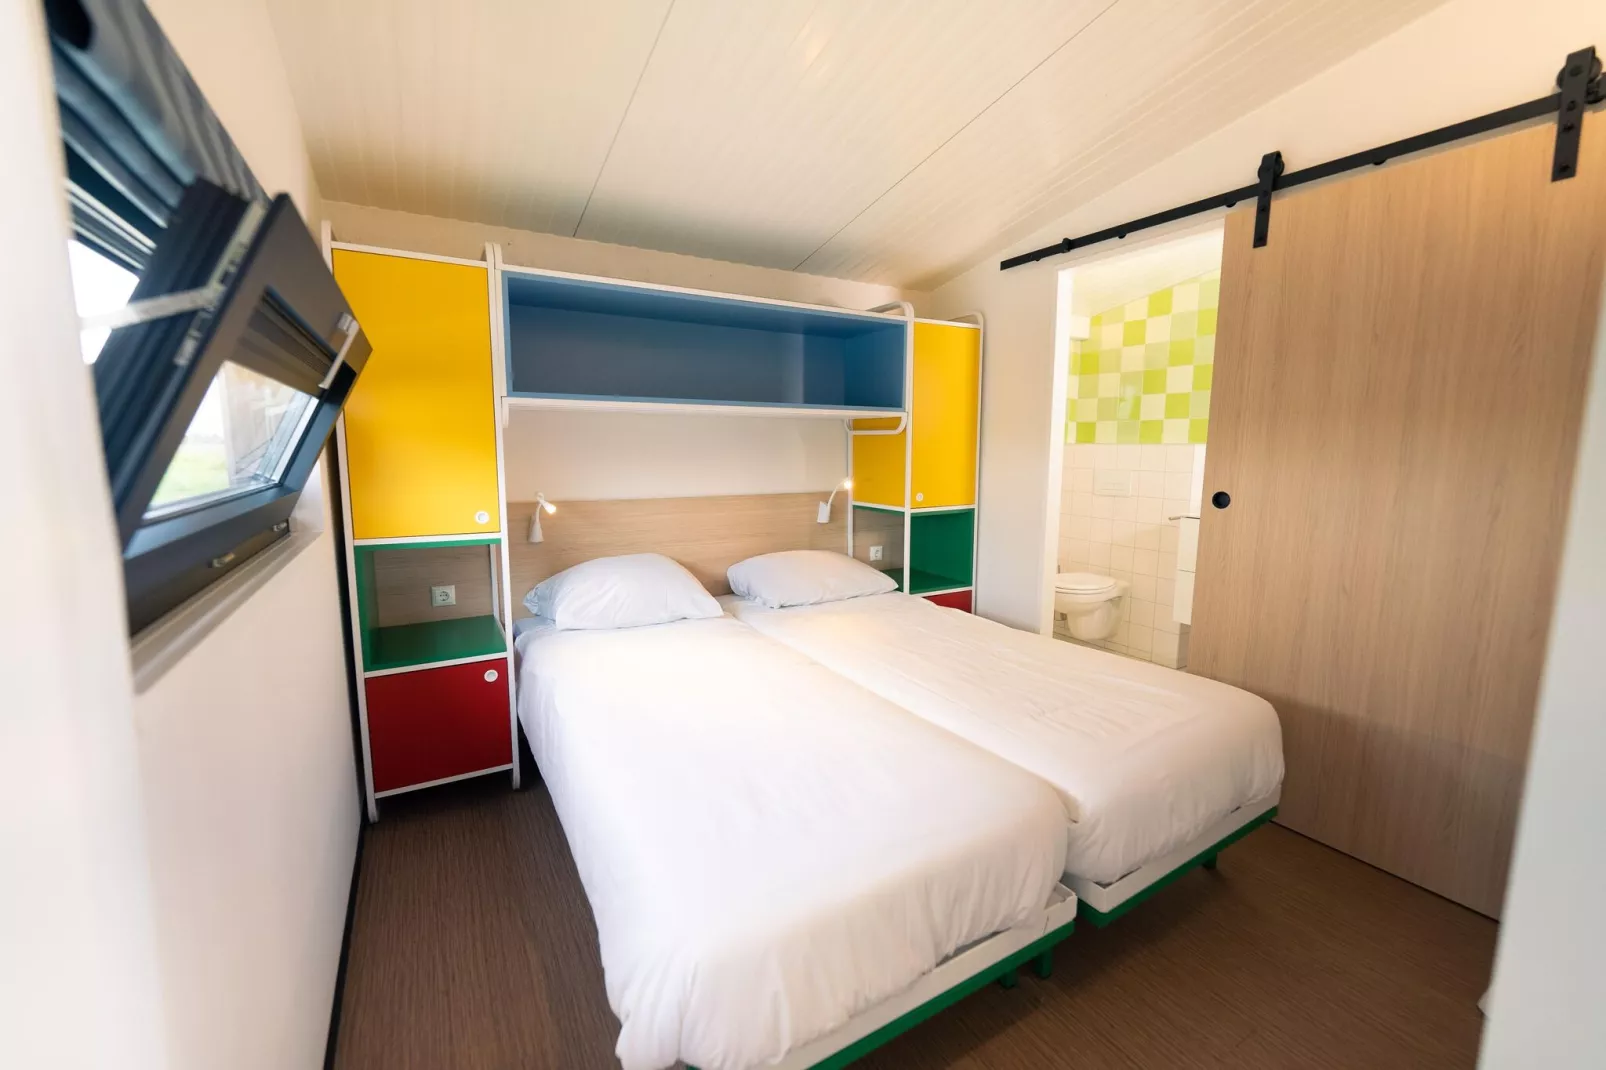 Resort Callantsoog 3-Slaapkamer